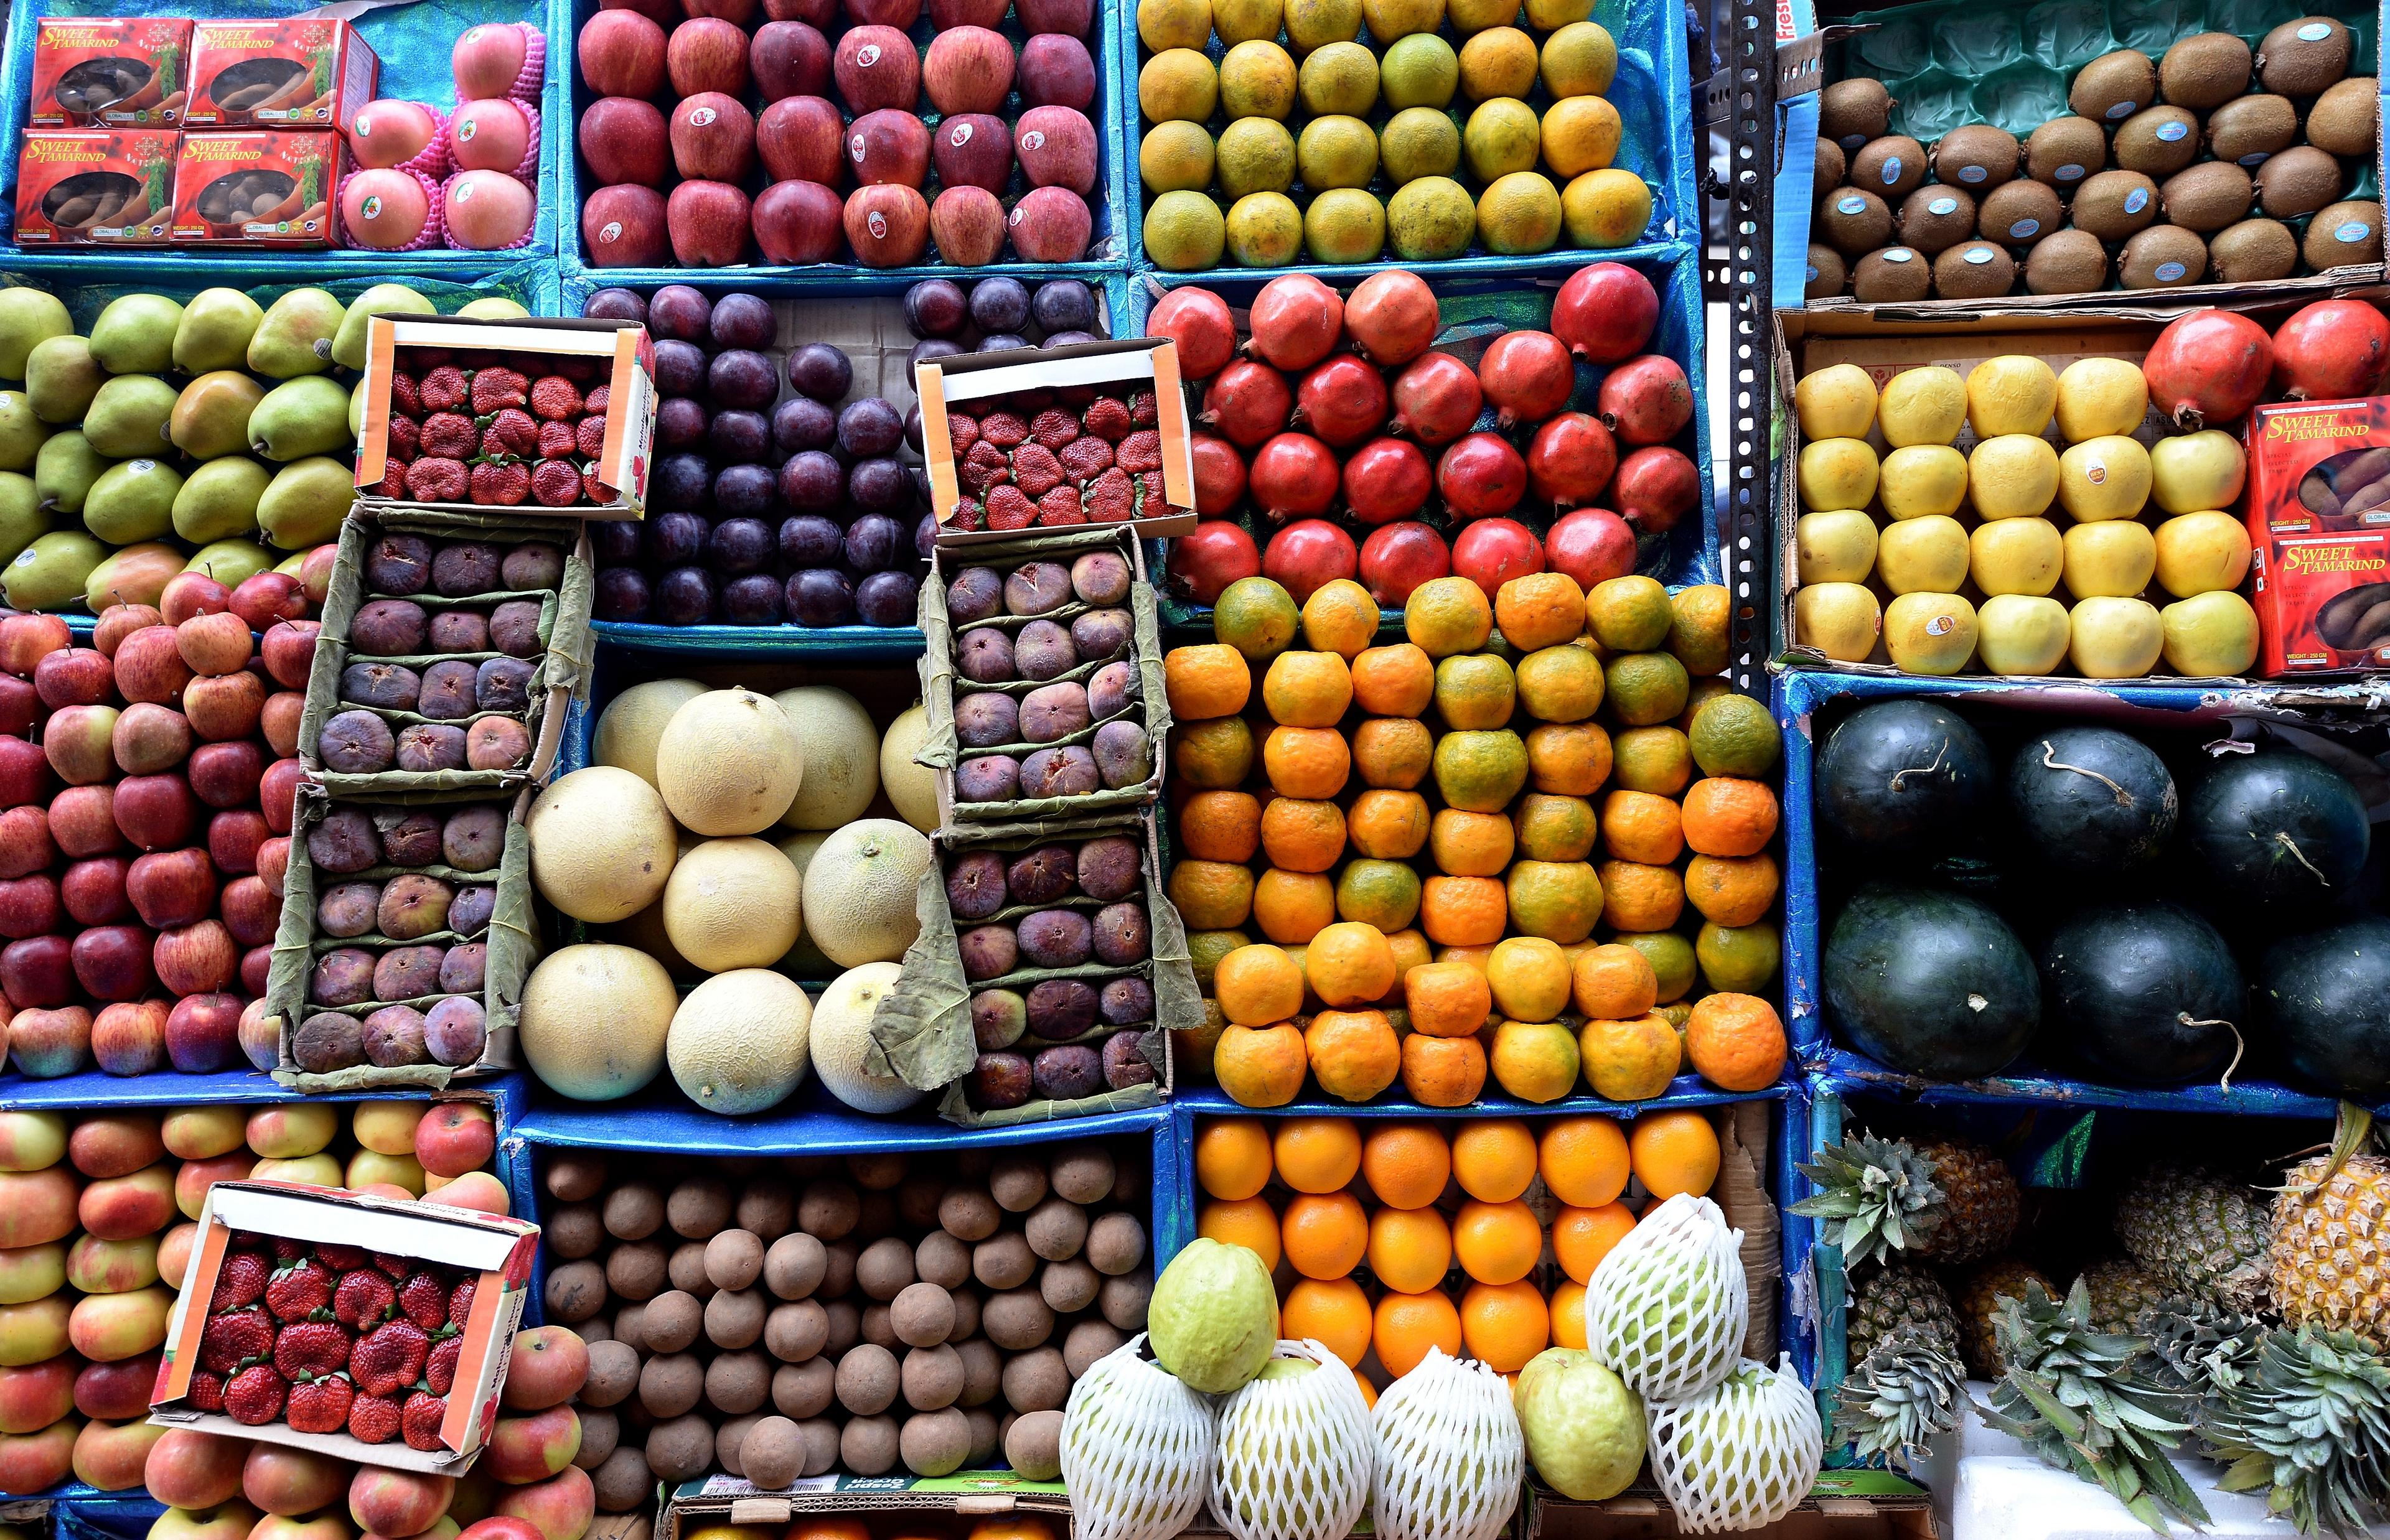 Försäljning av ekologisk frukt har ökat 85 procent på ett år. (Foto: Indranil Mukherjee /AFP /Getty Images)